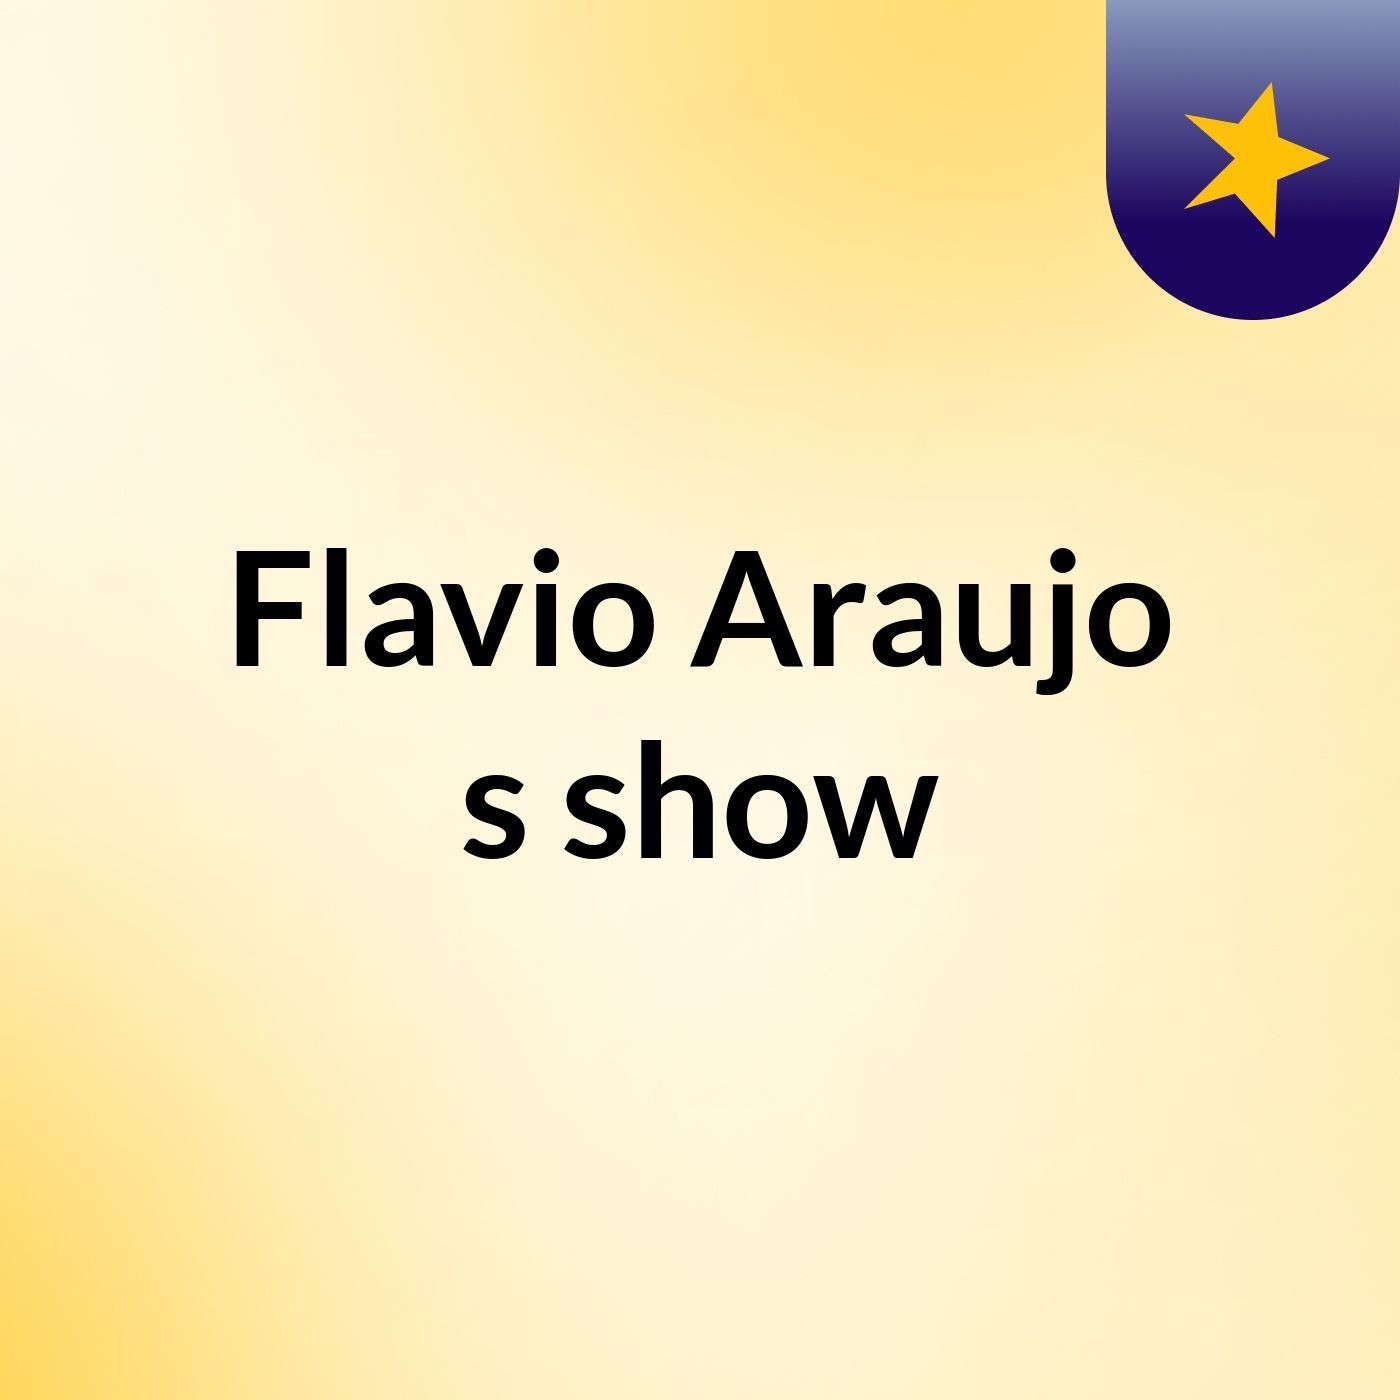 Flavio Araujo's show